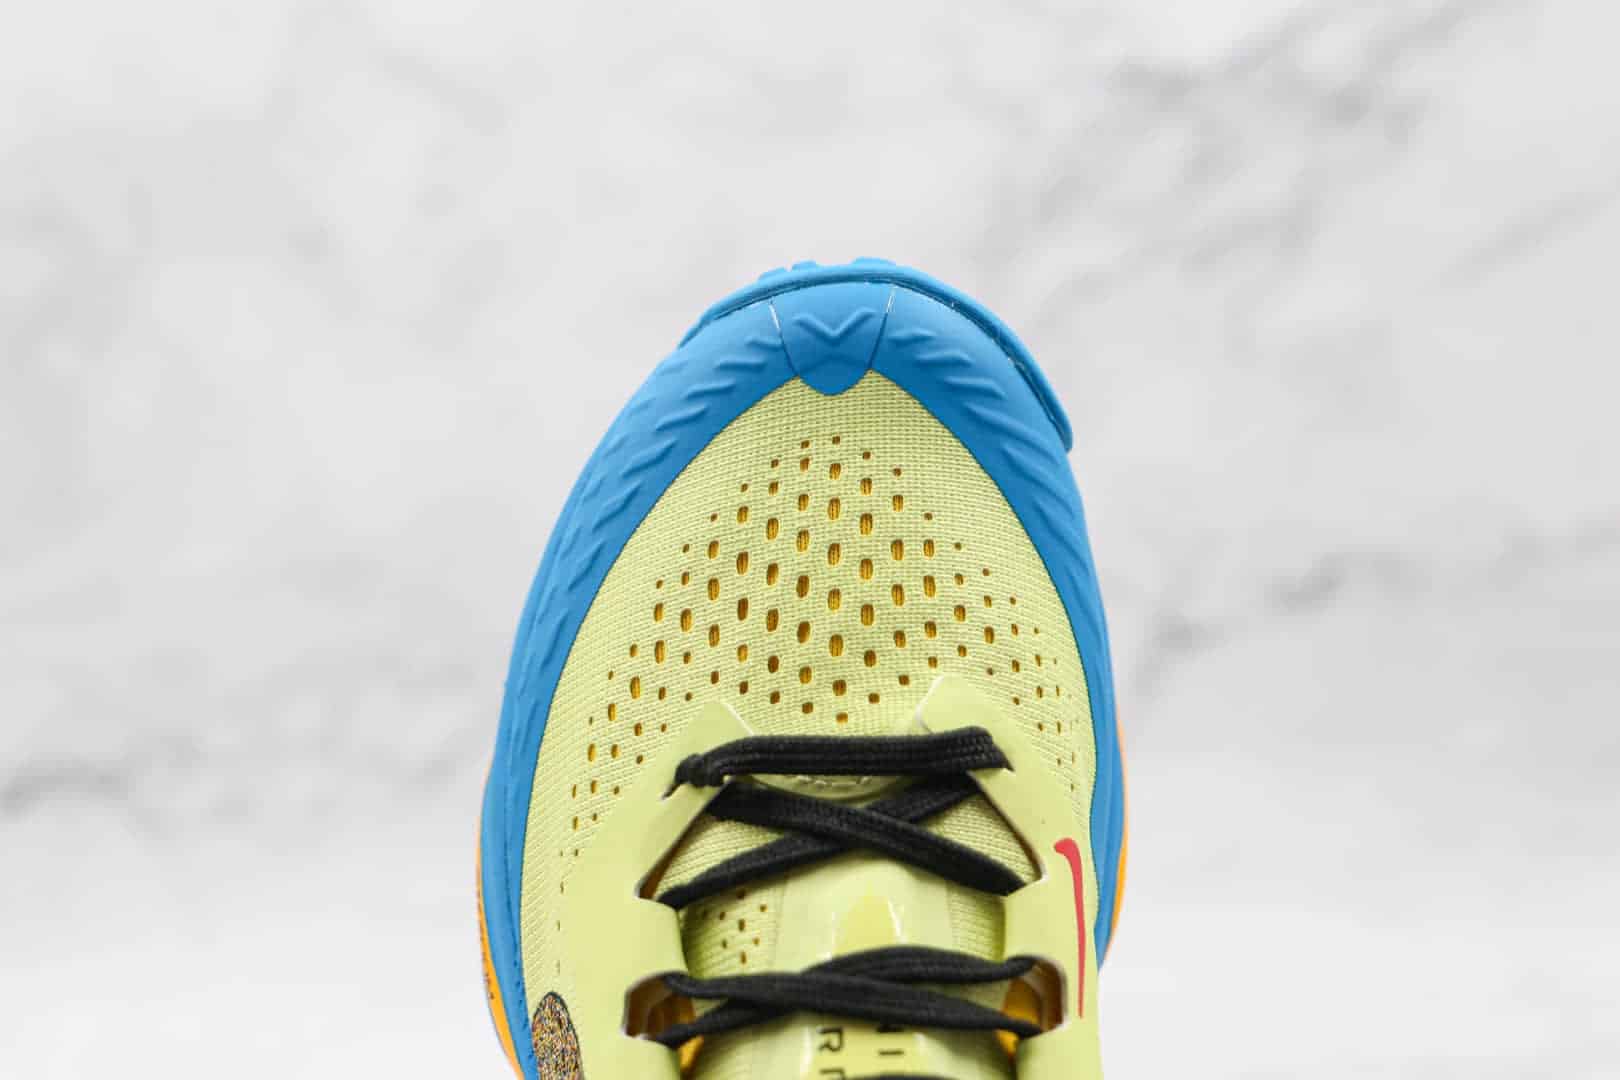 耐克Nike Air Zoom Terra Kiger 7越野跑鞋登山鞋黄蓝色 CW6066-009 - 耐克越野跑鞋, 耐克登山鞋, 耐克Terra Kiger 7黄蓝, Nike, CW6066-009